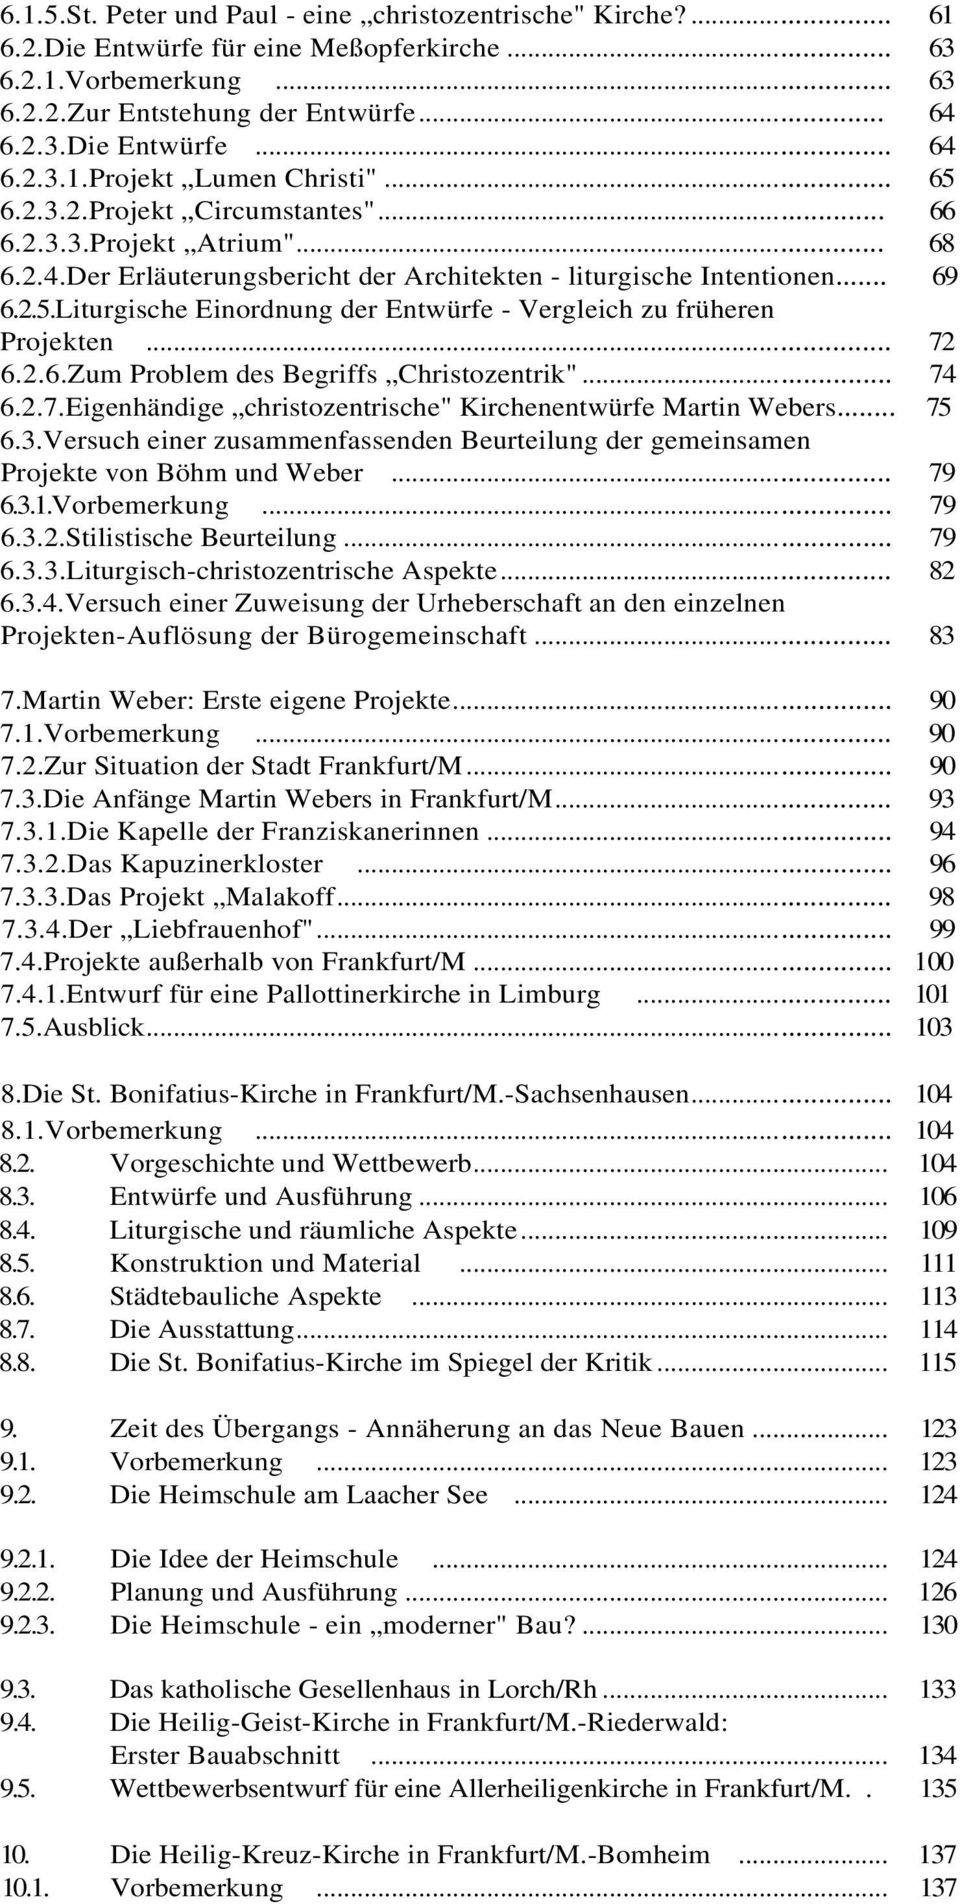 .. 72 6.2.6.Zum Problem des Begriffs Christozentrik"... 74 6.2.7.Eigenhändige christozentrische" Kirchenentwürfe Martin Webers... 75 6.3.